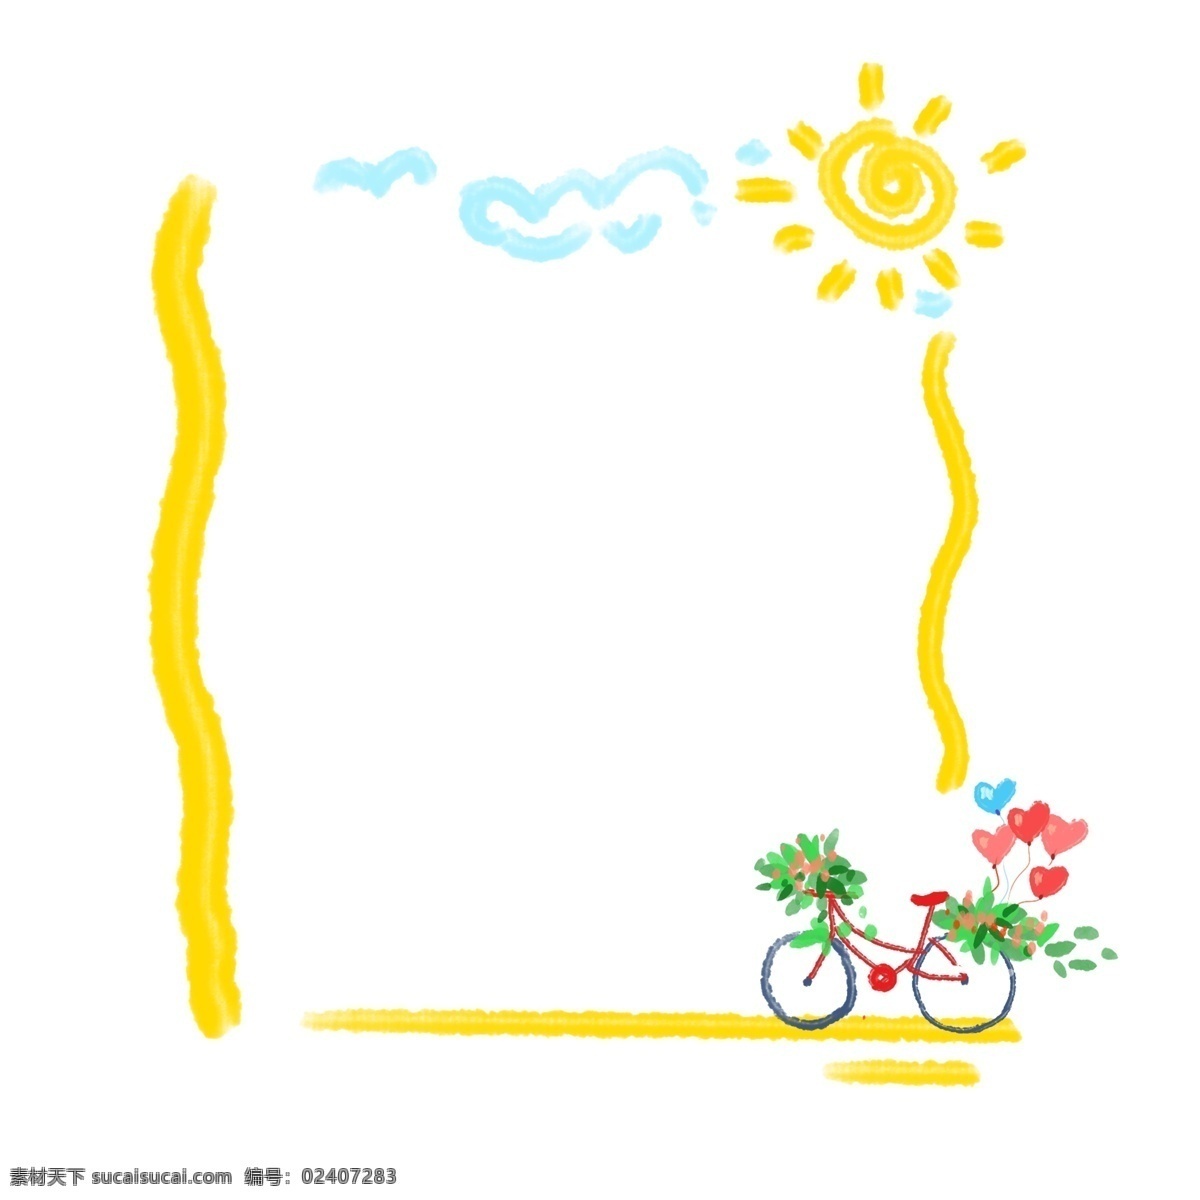 黄色 自行车 边框 黄色的边框 太阳边框 自行车边框 气球边框 爱心边框 儿童节边框 创意边框